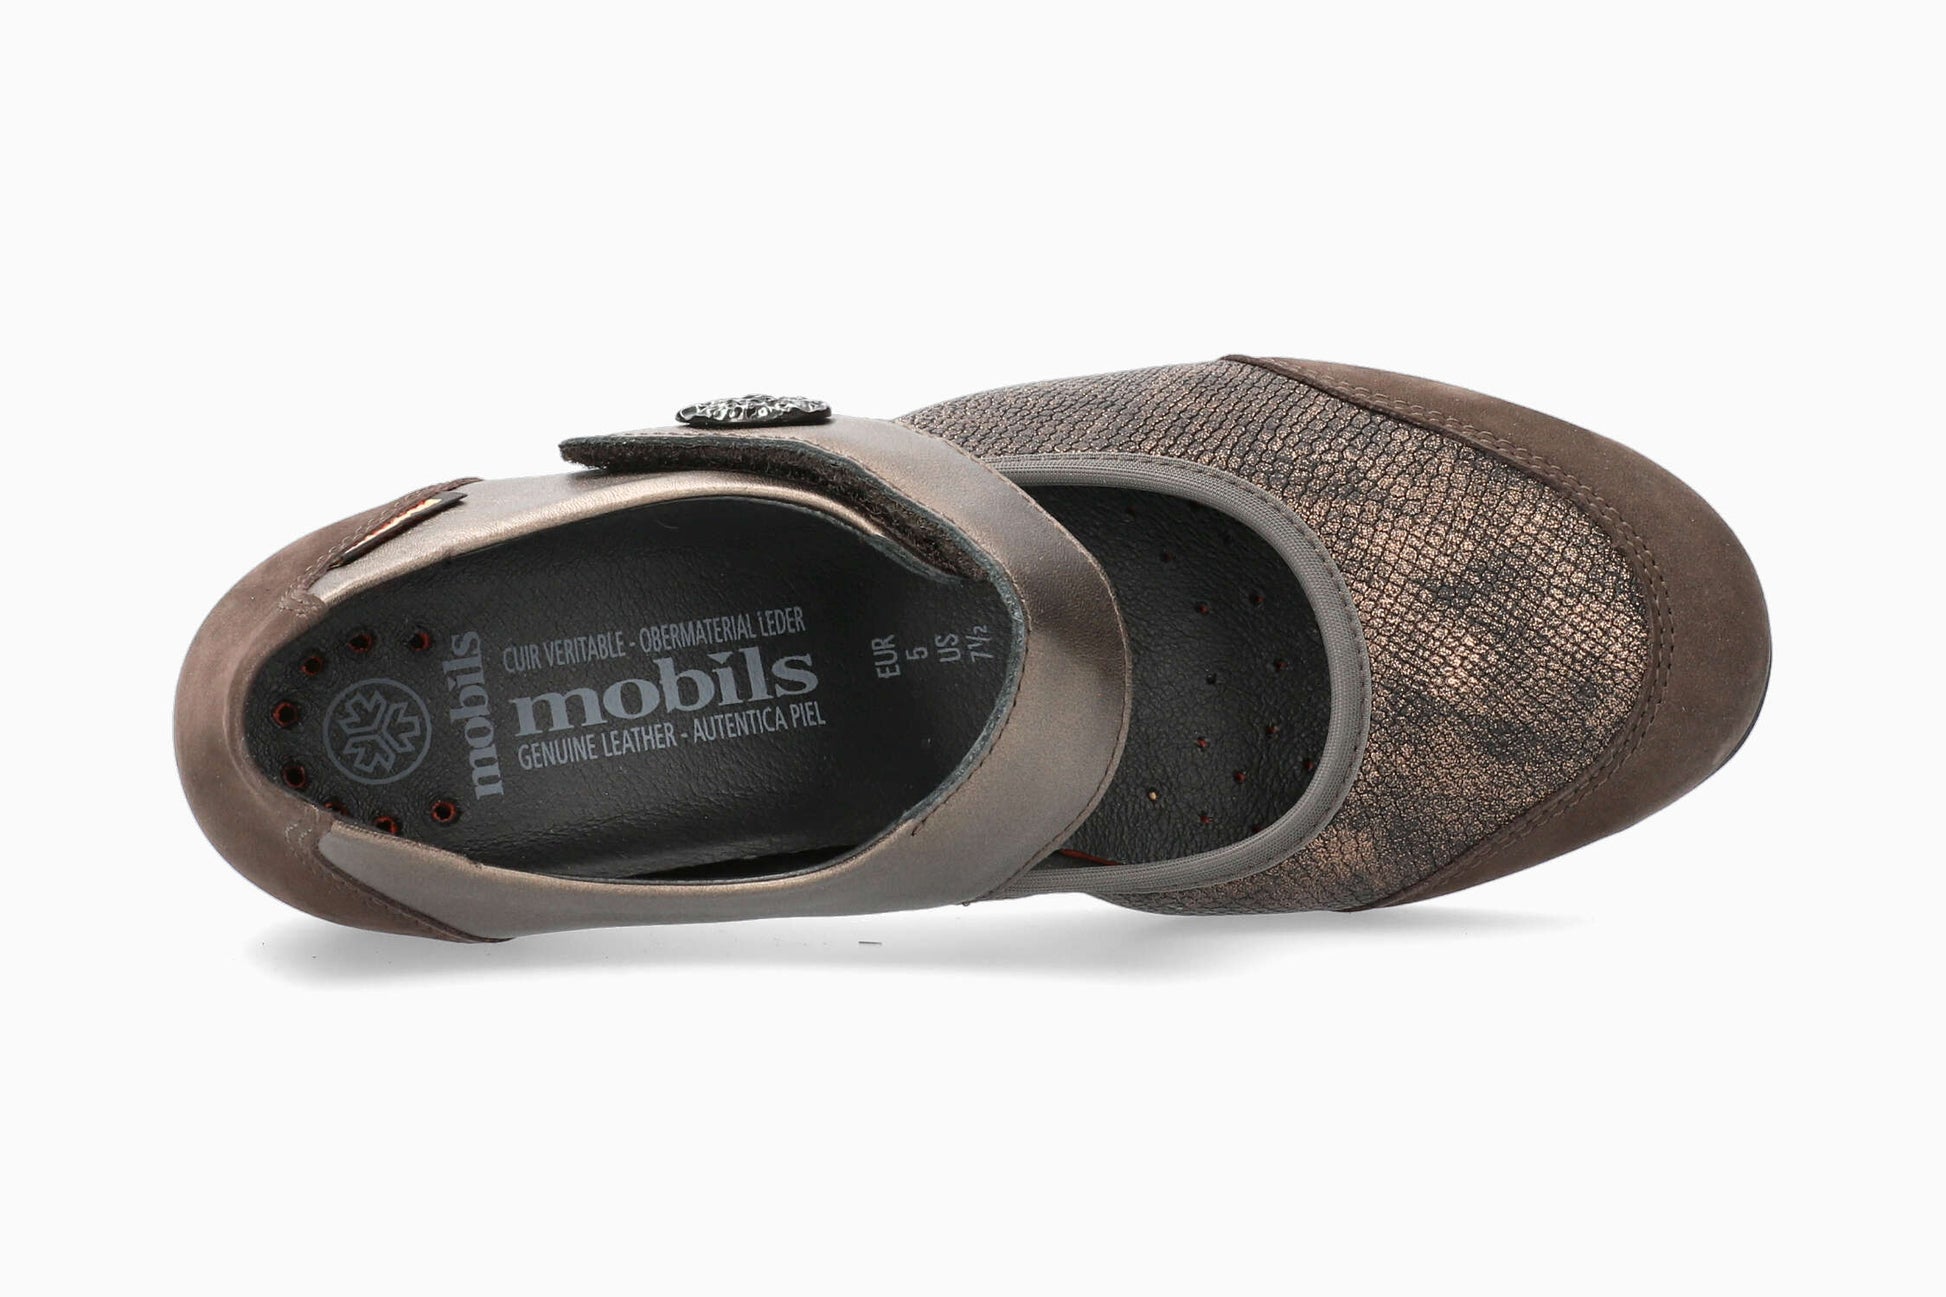 Mobils Bathilda Dark Brown Women's Shoe Top